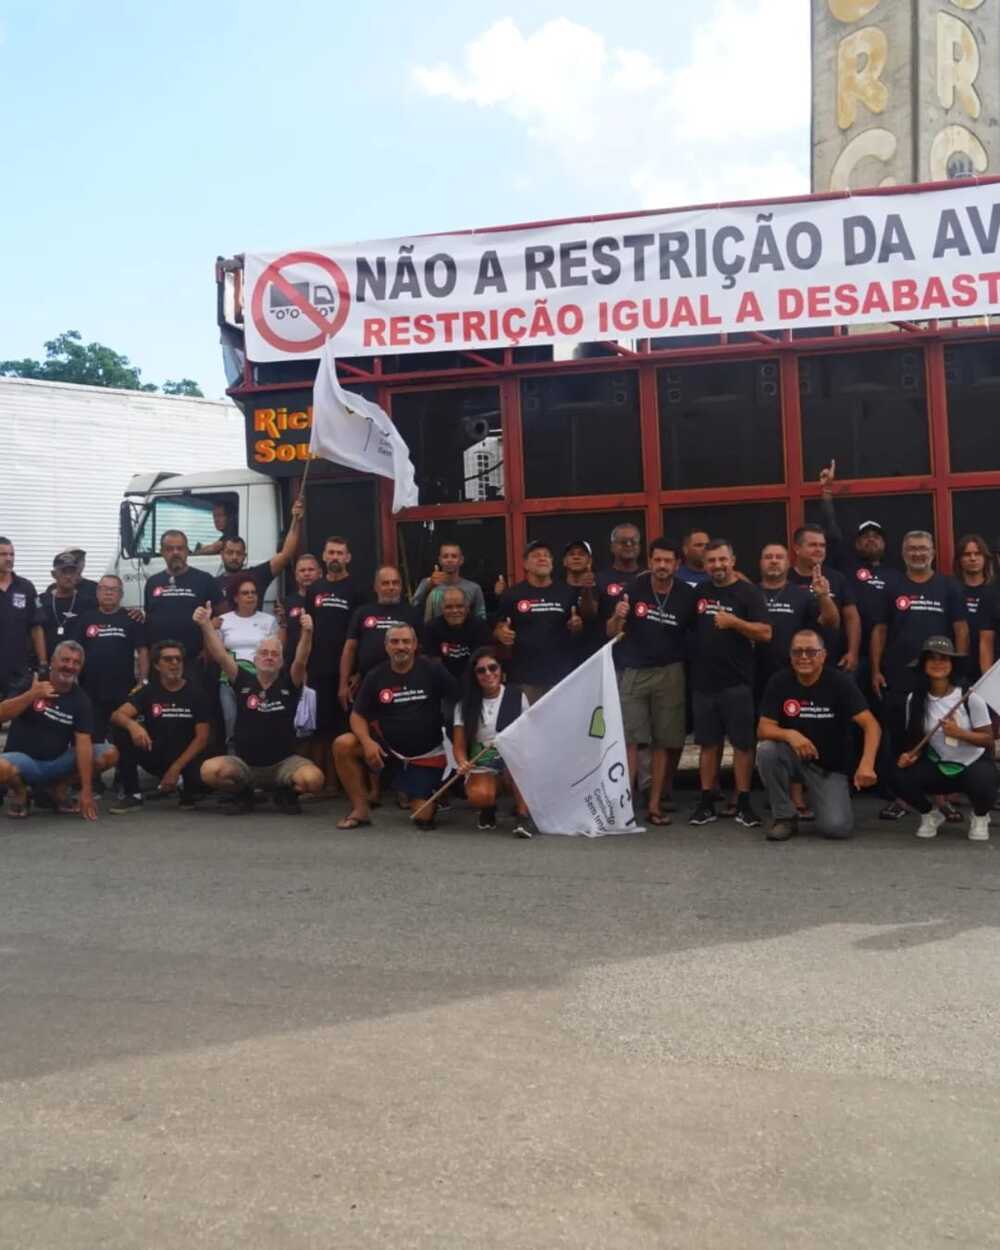 Movimento CSI e a decisão que suspendeu restrições na Avenida Brasil, preservando a logística vital para o abastecimento da cidade